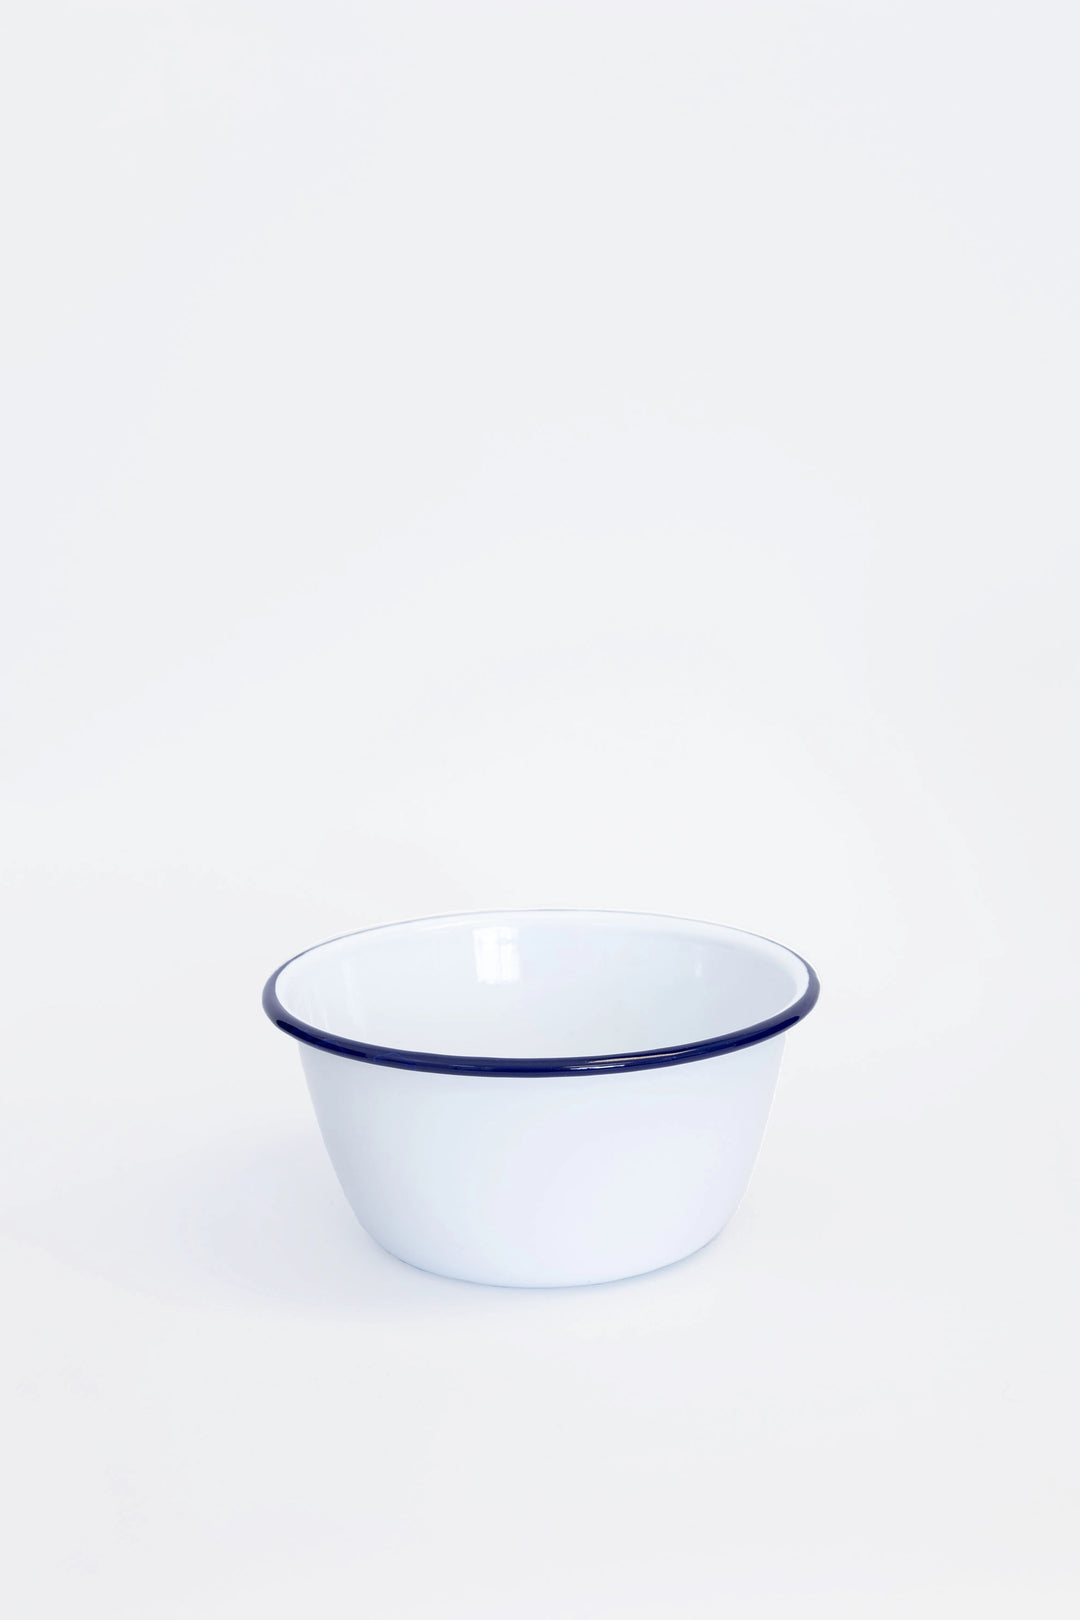 Enamelware Pudding Basin Blue & White / 14cm